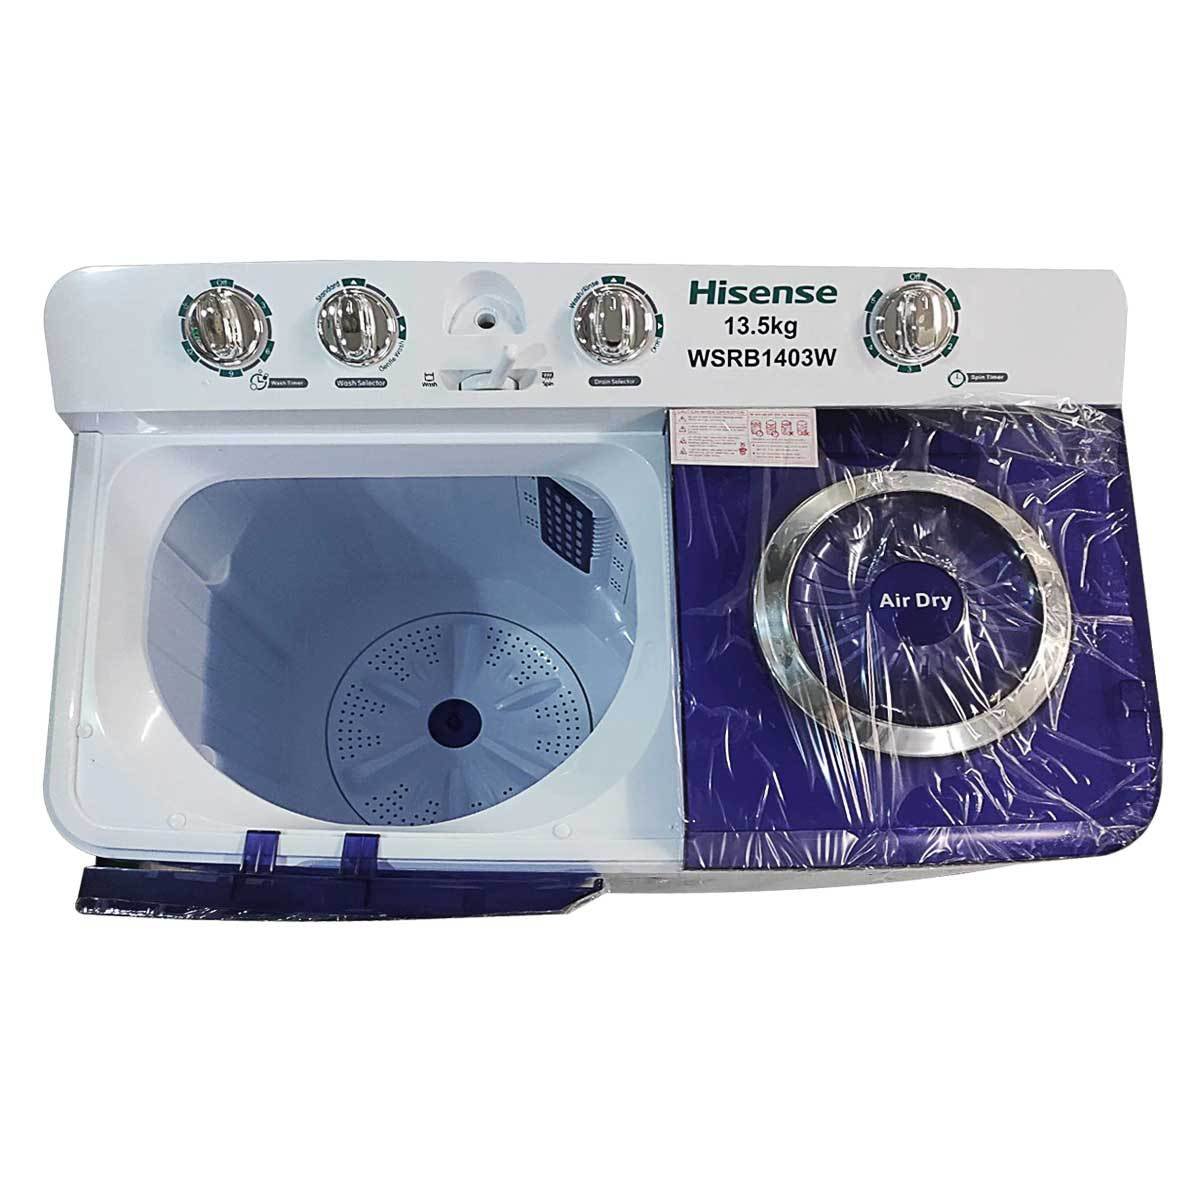 Hisense WSRB143W Semi - Automatic Washing Machine